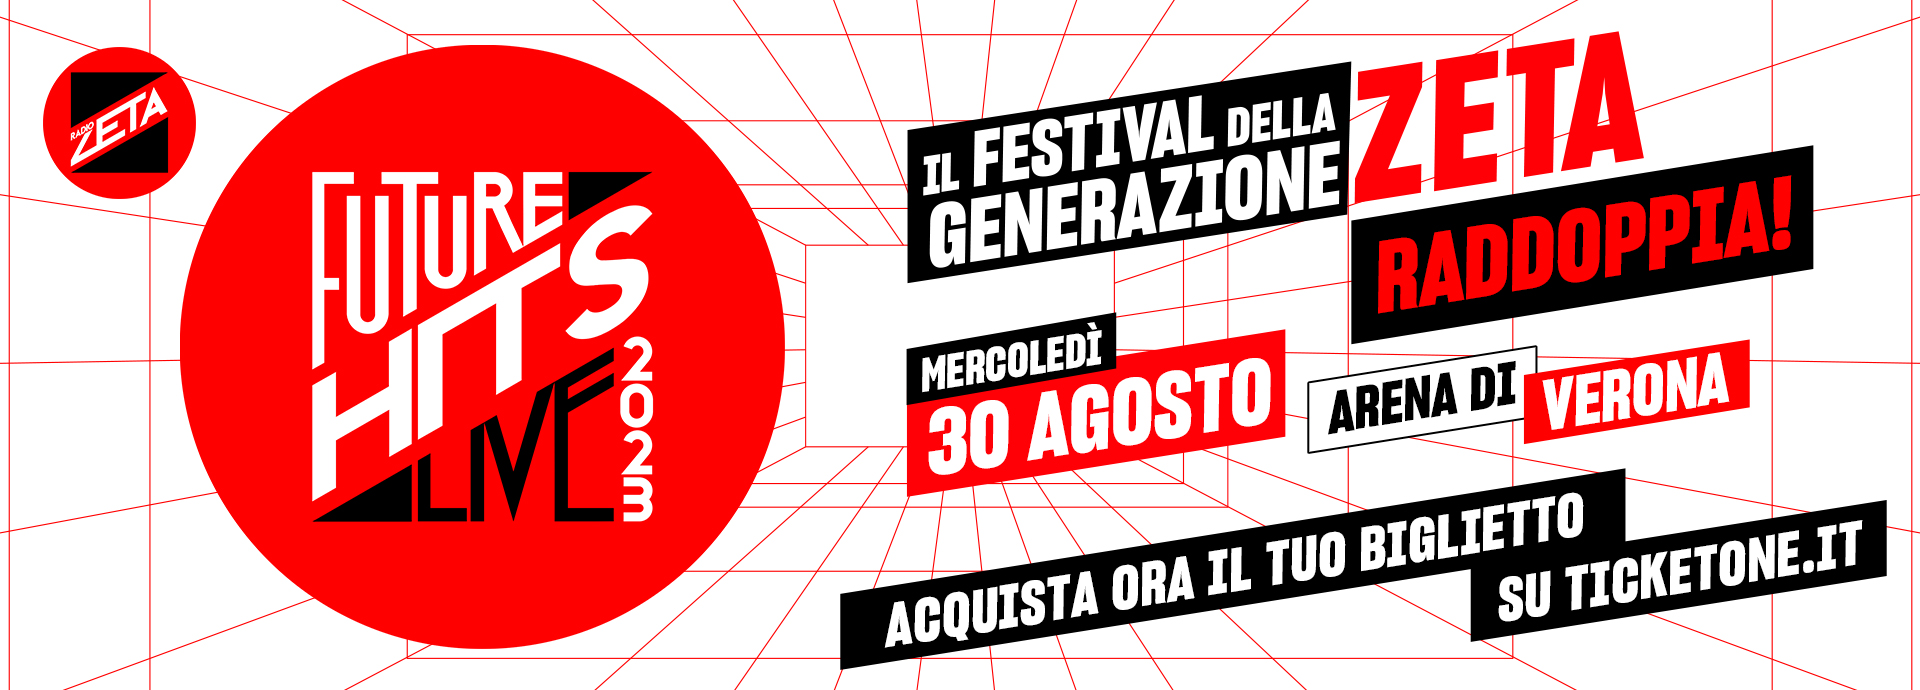 Radio Zeta Future Hits Live - Il Festival Della Generazione Zeta!